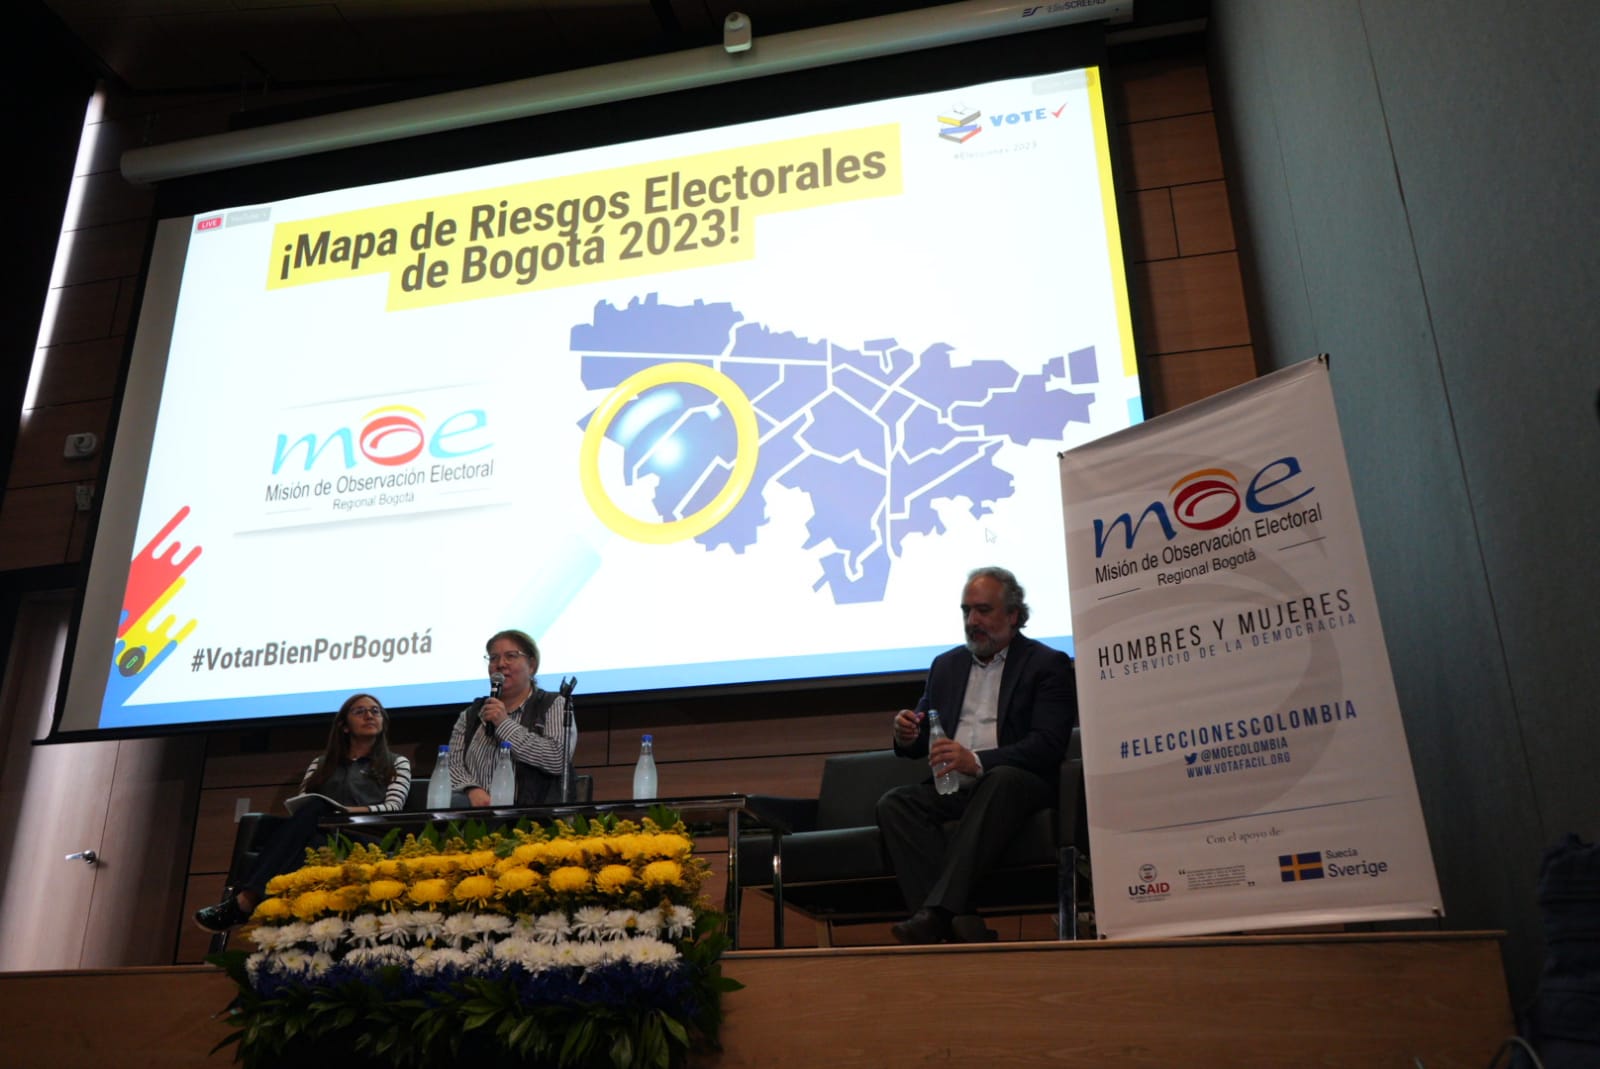 Imagen noticia 160 puestos de votación en Bogotá presentan riesgos electorales alerta la MOE